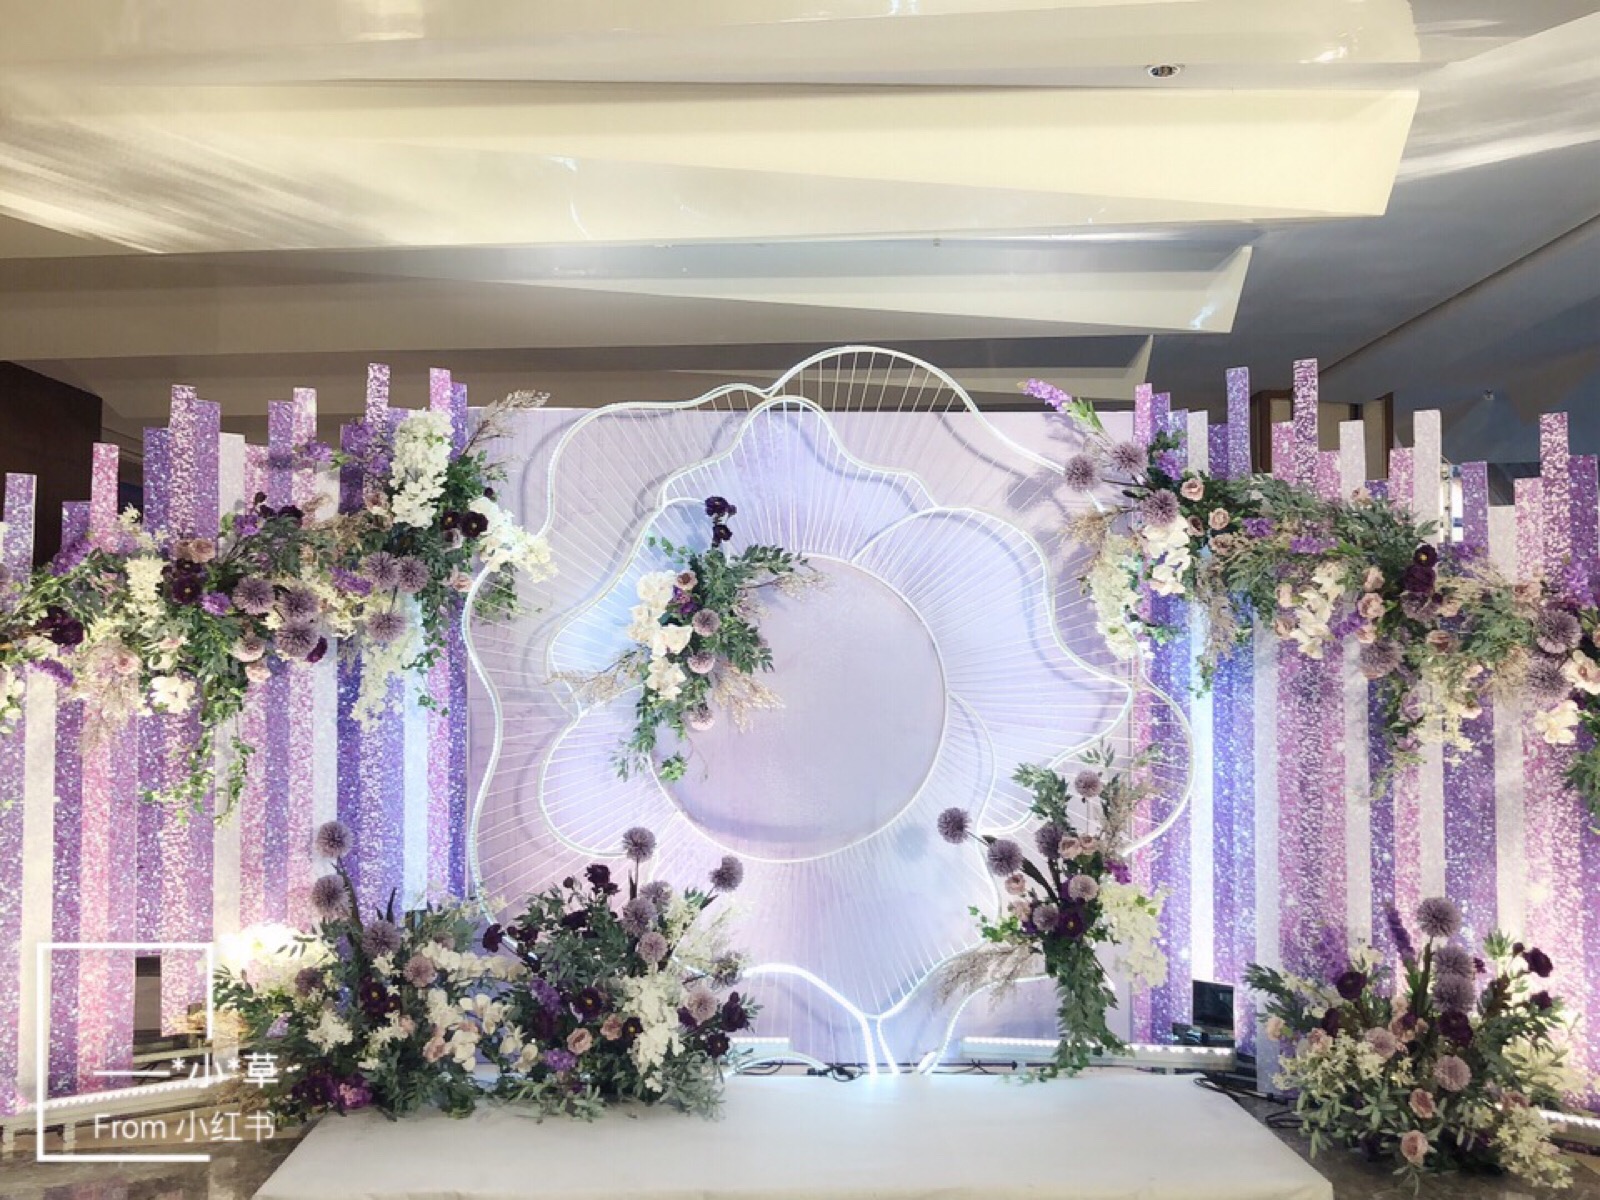 婚礼类型:室内婚礼 婚礼风格:传统西式 婚礼灵感:月牙湾湖旁的迷蝶紫